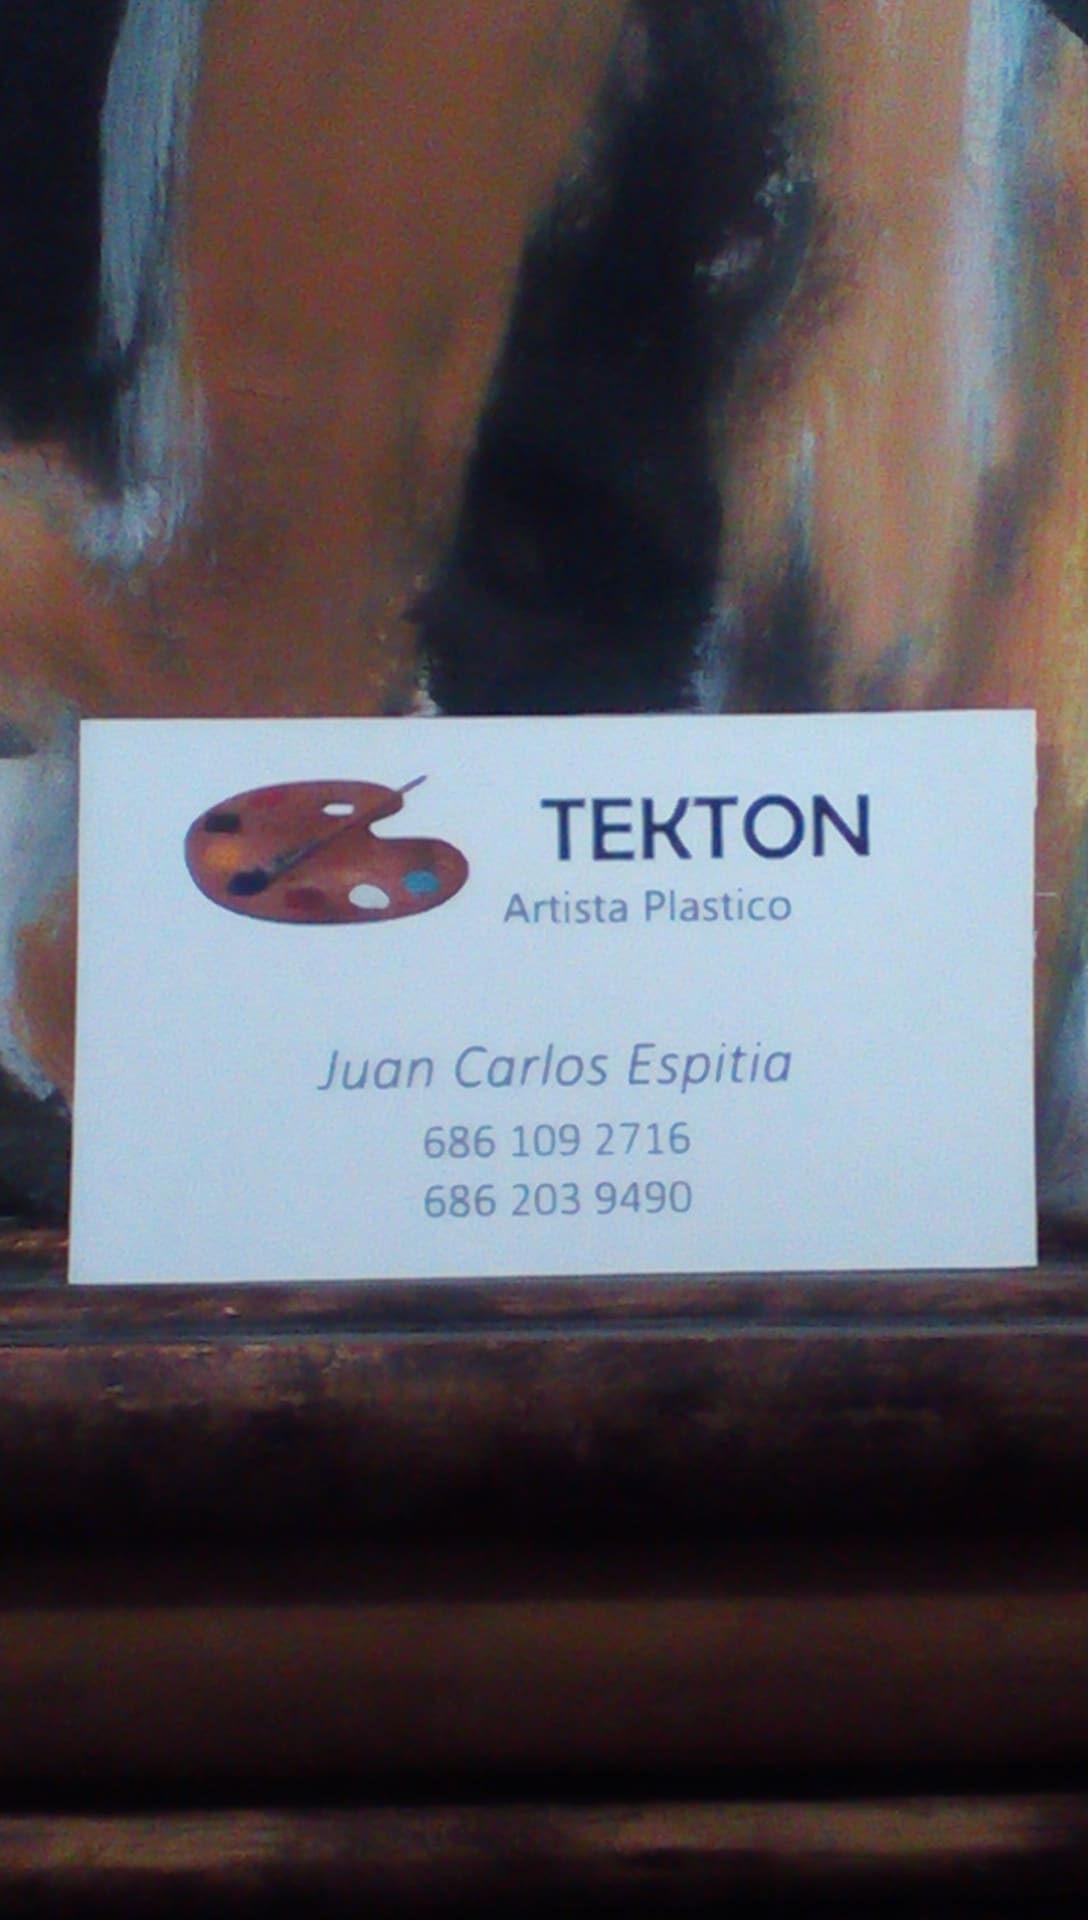 ARTISTA PLASTICO TEKTON